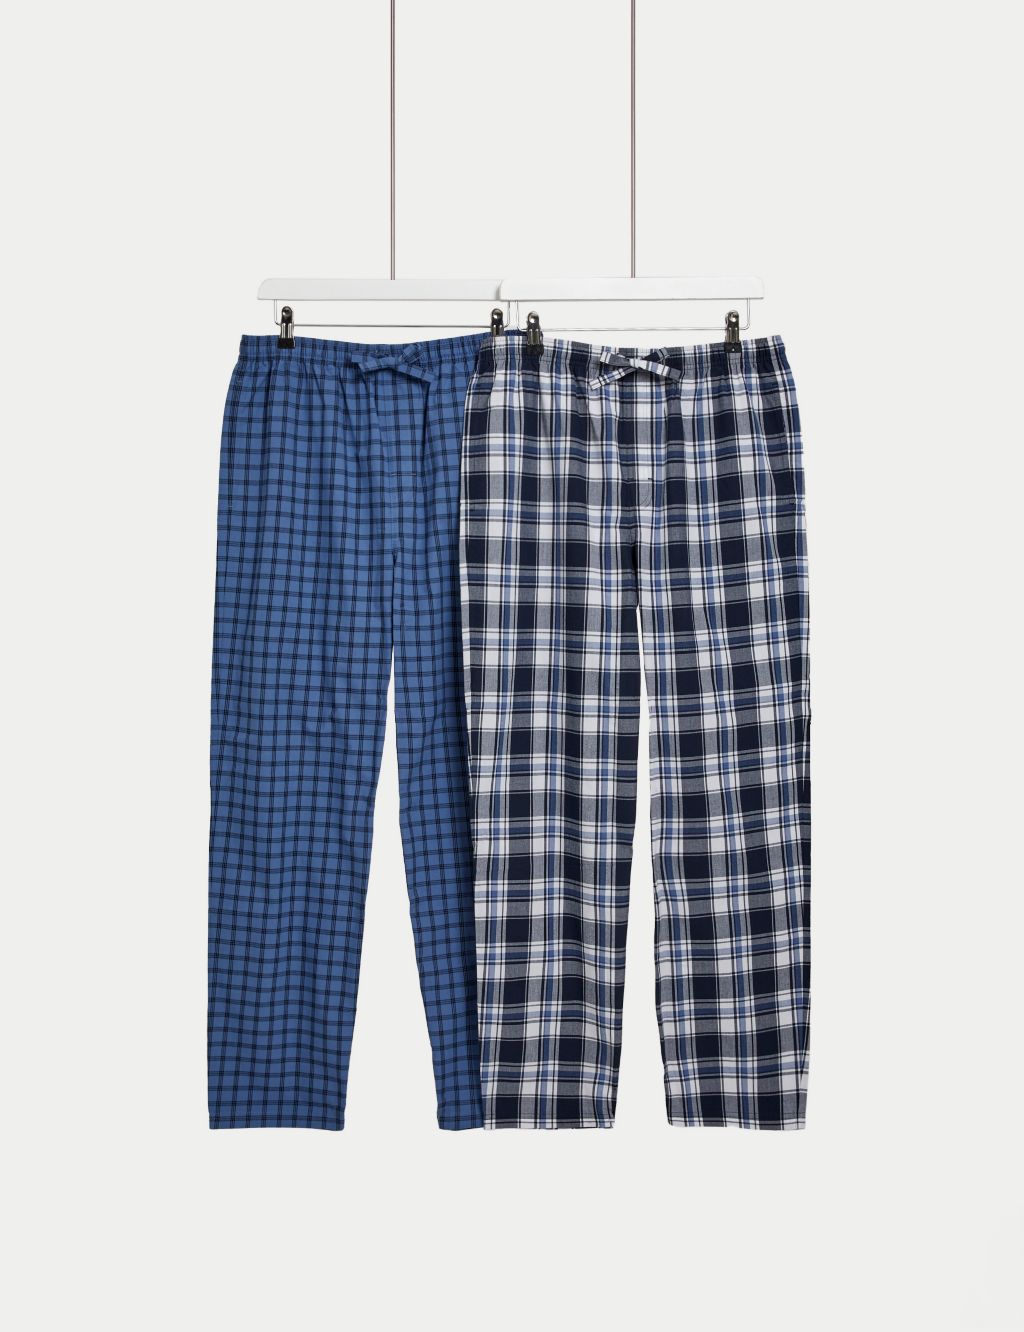 Men's pyjama set for €32.99 - Pajamas - Hunkemöller